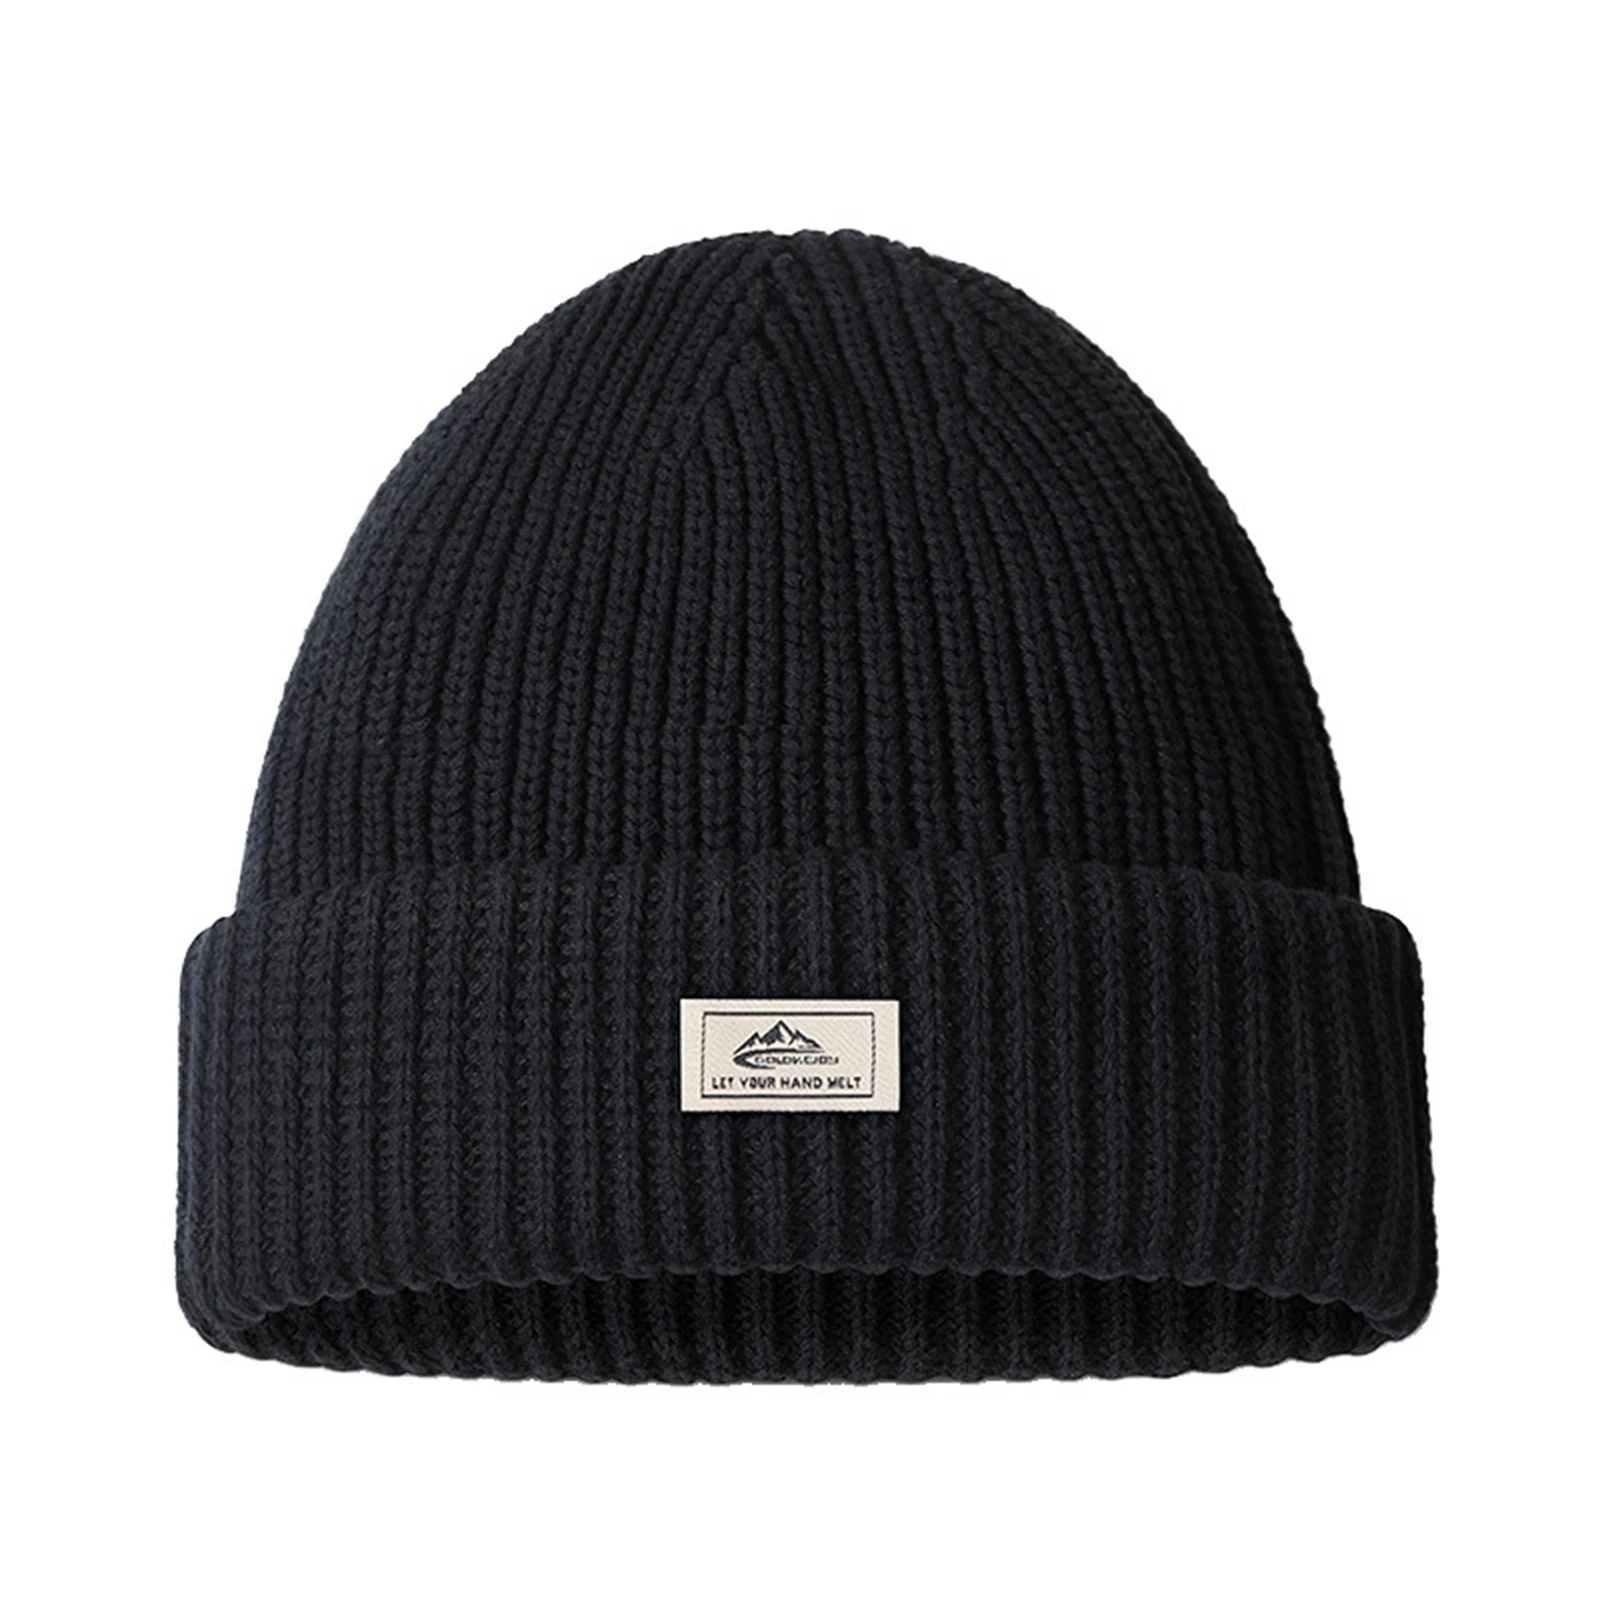 

Зимняя теплая шапка для мужчин, уличная Толстая Вязаная хлопковая шапка бини, шапка для холодной погоды, катания на лыжах, походов, бега